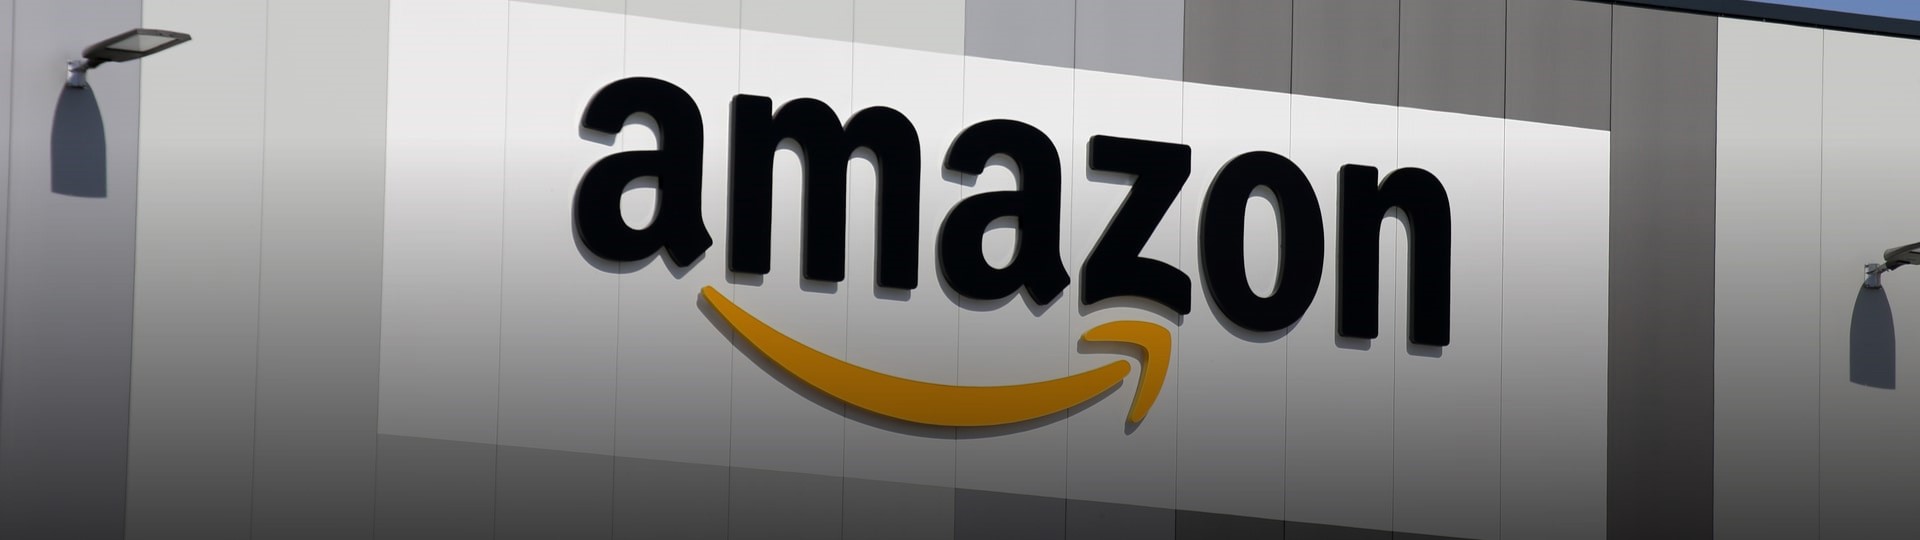 Internetový prodejce Amazon otevře v Itálii dvě logistická centra